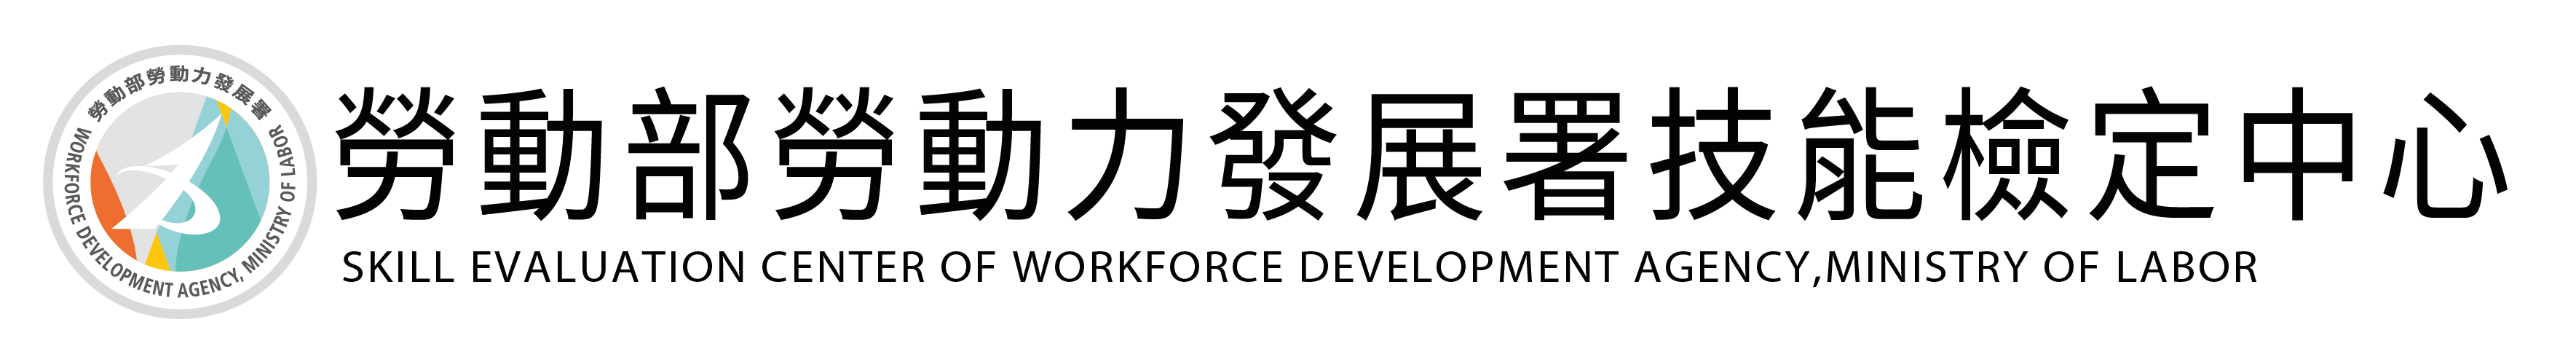 勞動部勞動力發展署技能檢定中心Logo